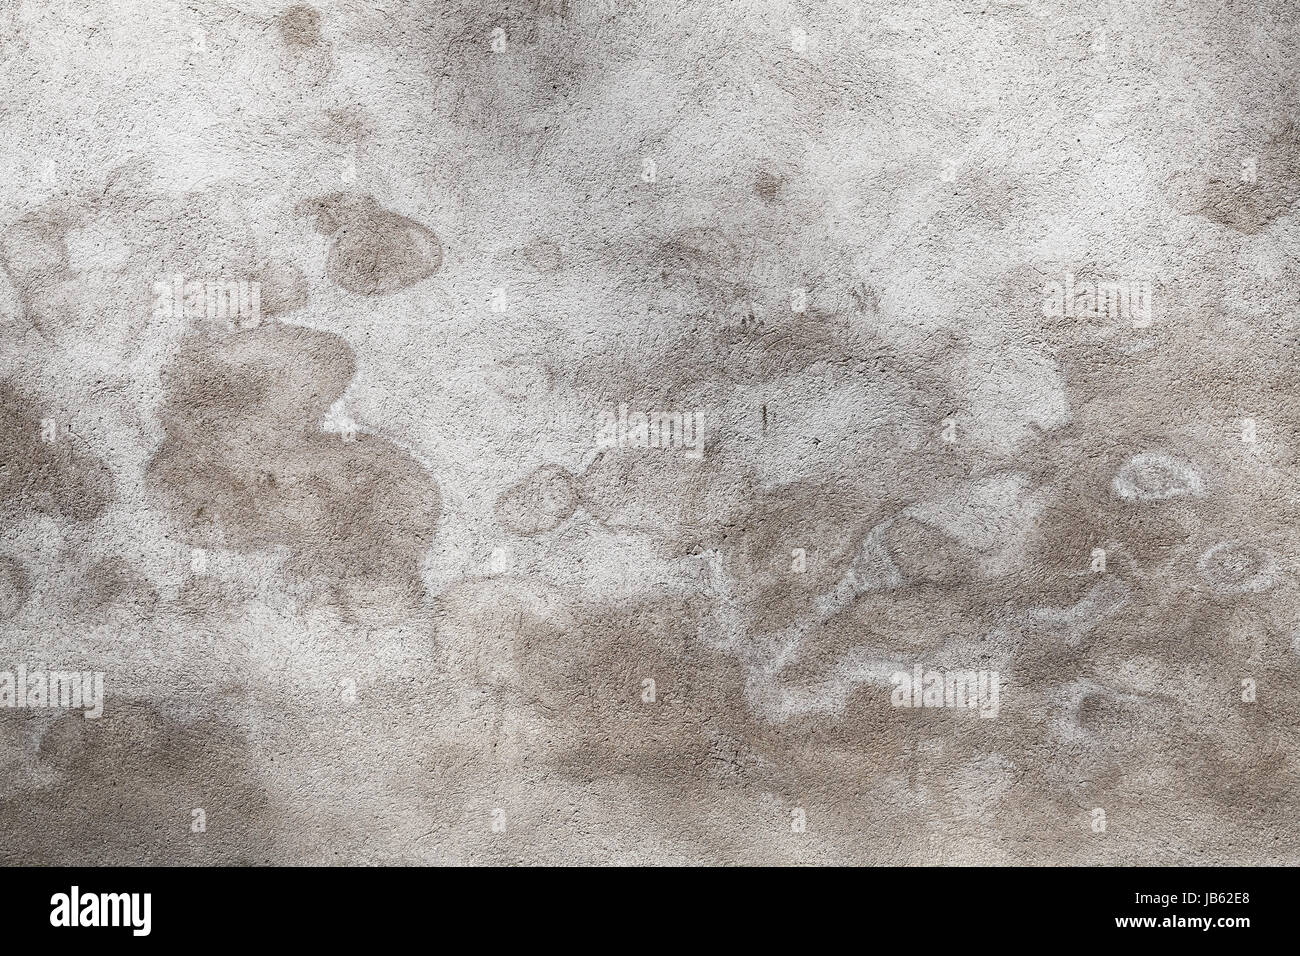 Grigio muro di cemento con macchie di umido pattern, grungy foto di sfondo texture Foto Stock